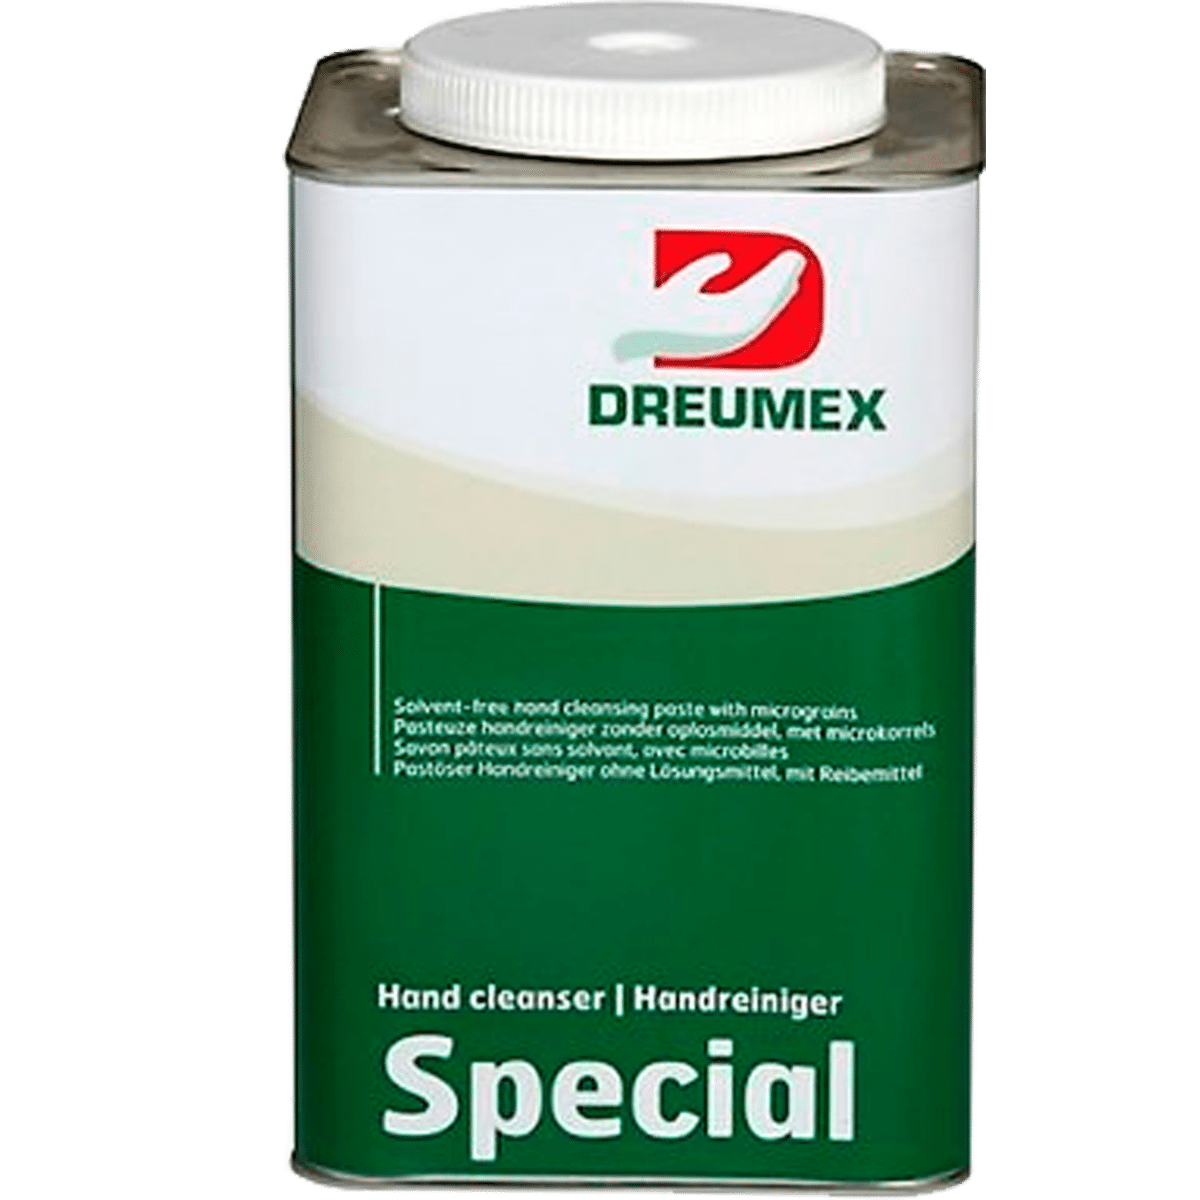 DREUMEX Special 4,2kg Biała Pasta do Rąk bez Rozpuszczalników Łagodnie Perfumowana